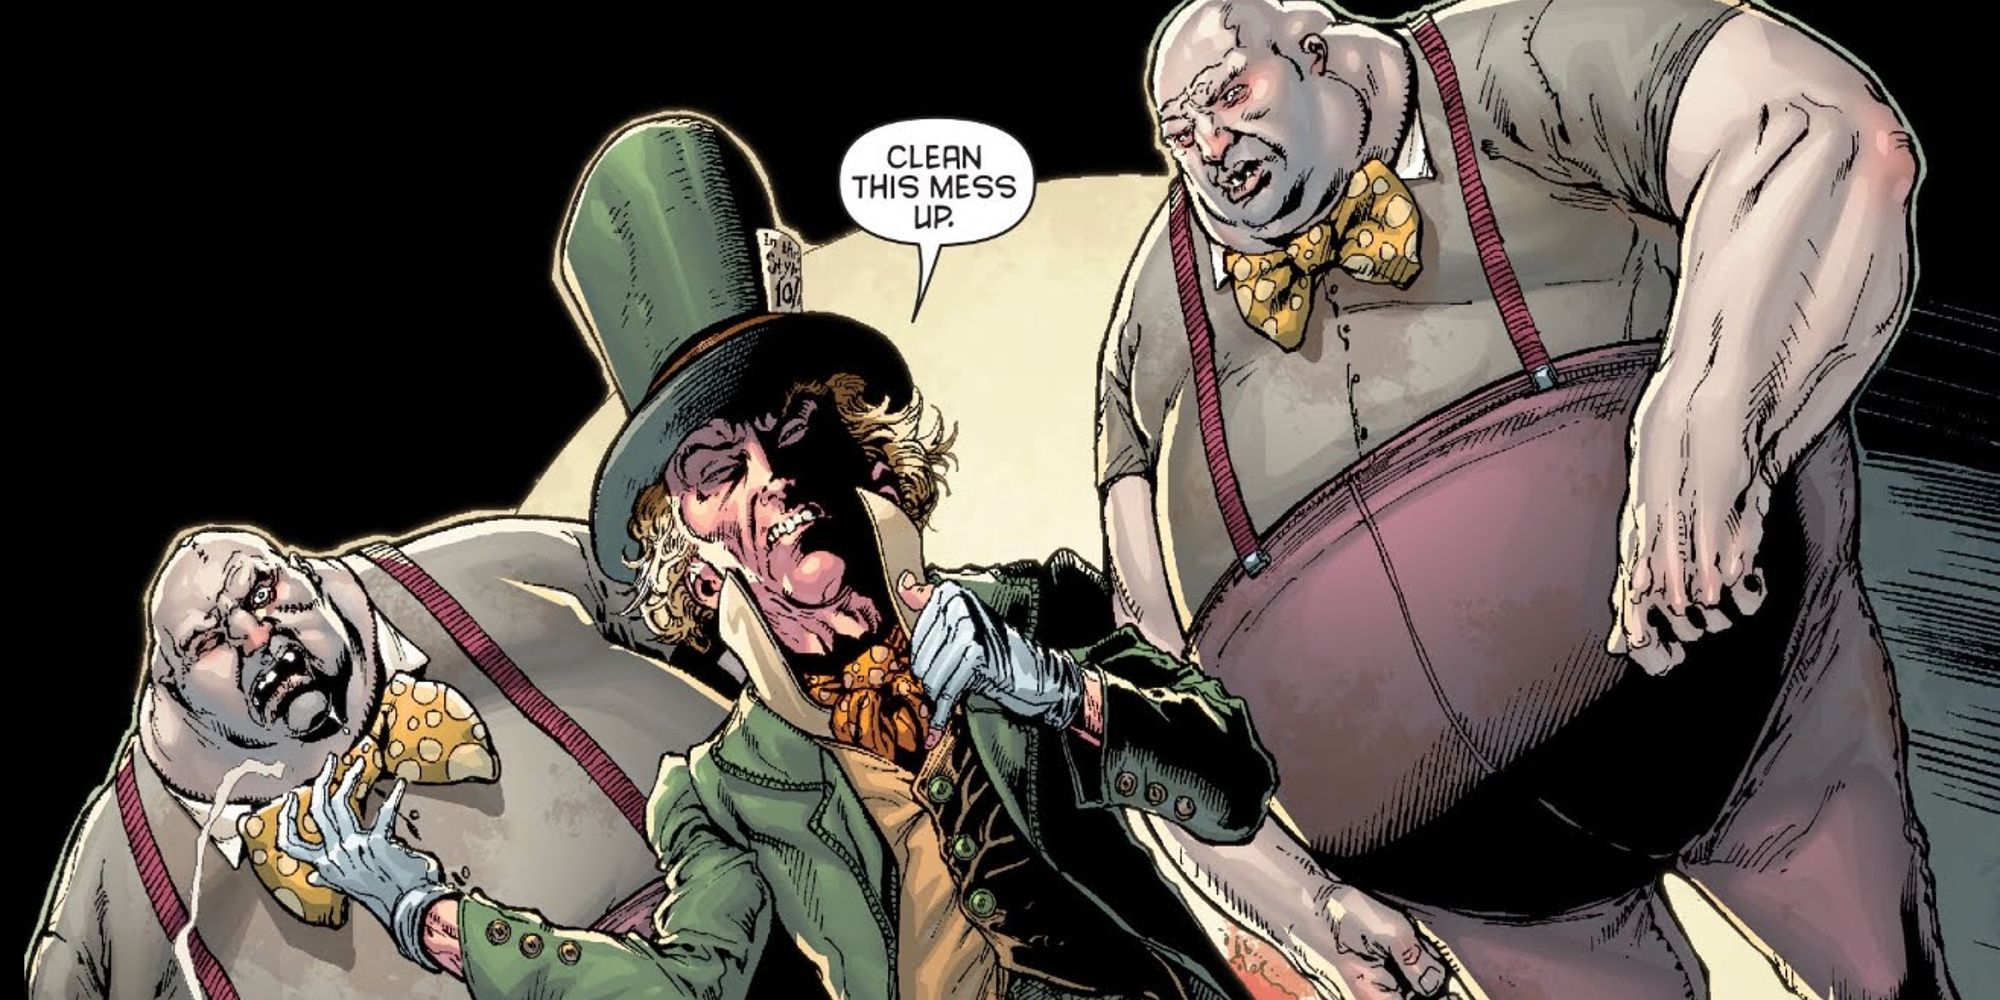 The Mad Hatter commanding Tweedle Dee and Tweedle Dum in DC comics